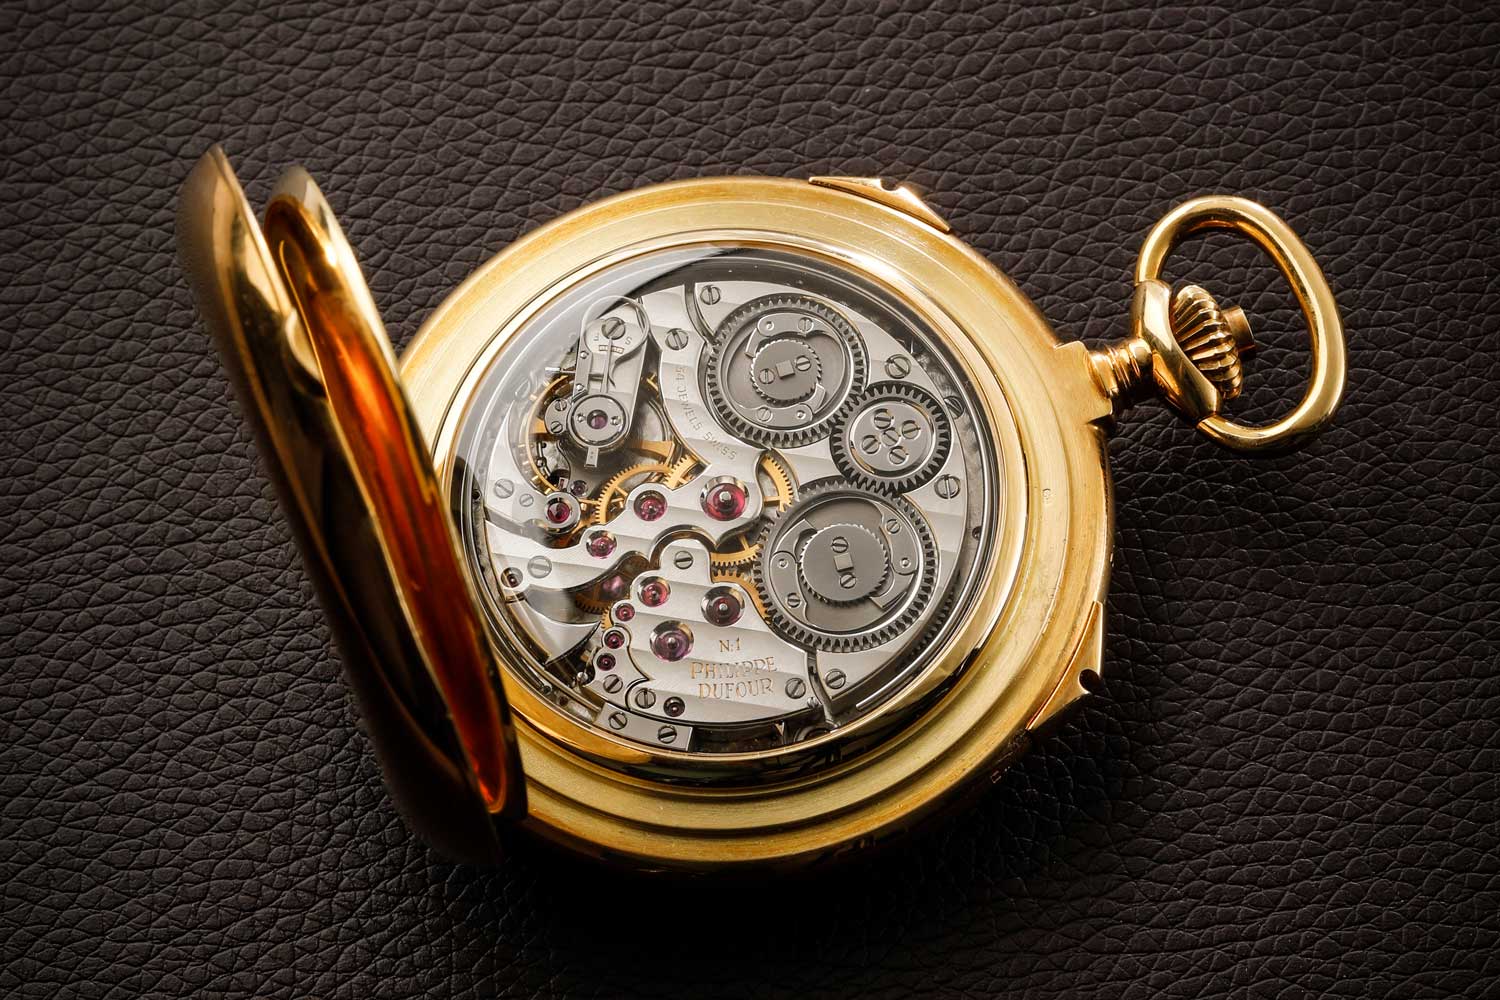 Grande & Petite Sonnerie Pocket Watch Number 1 (Unique Piece)